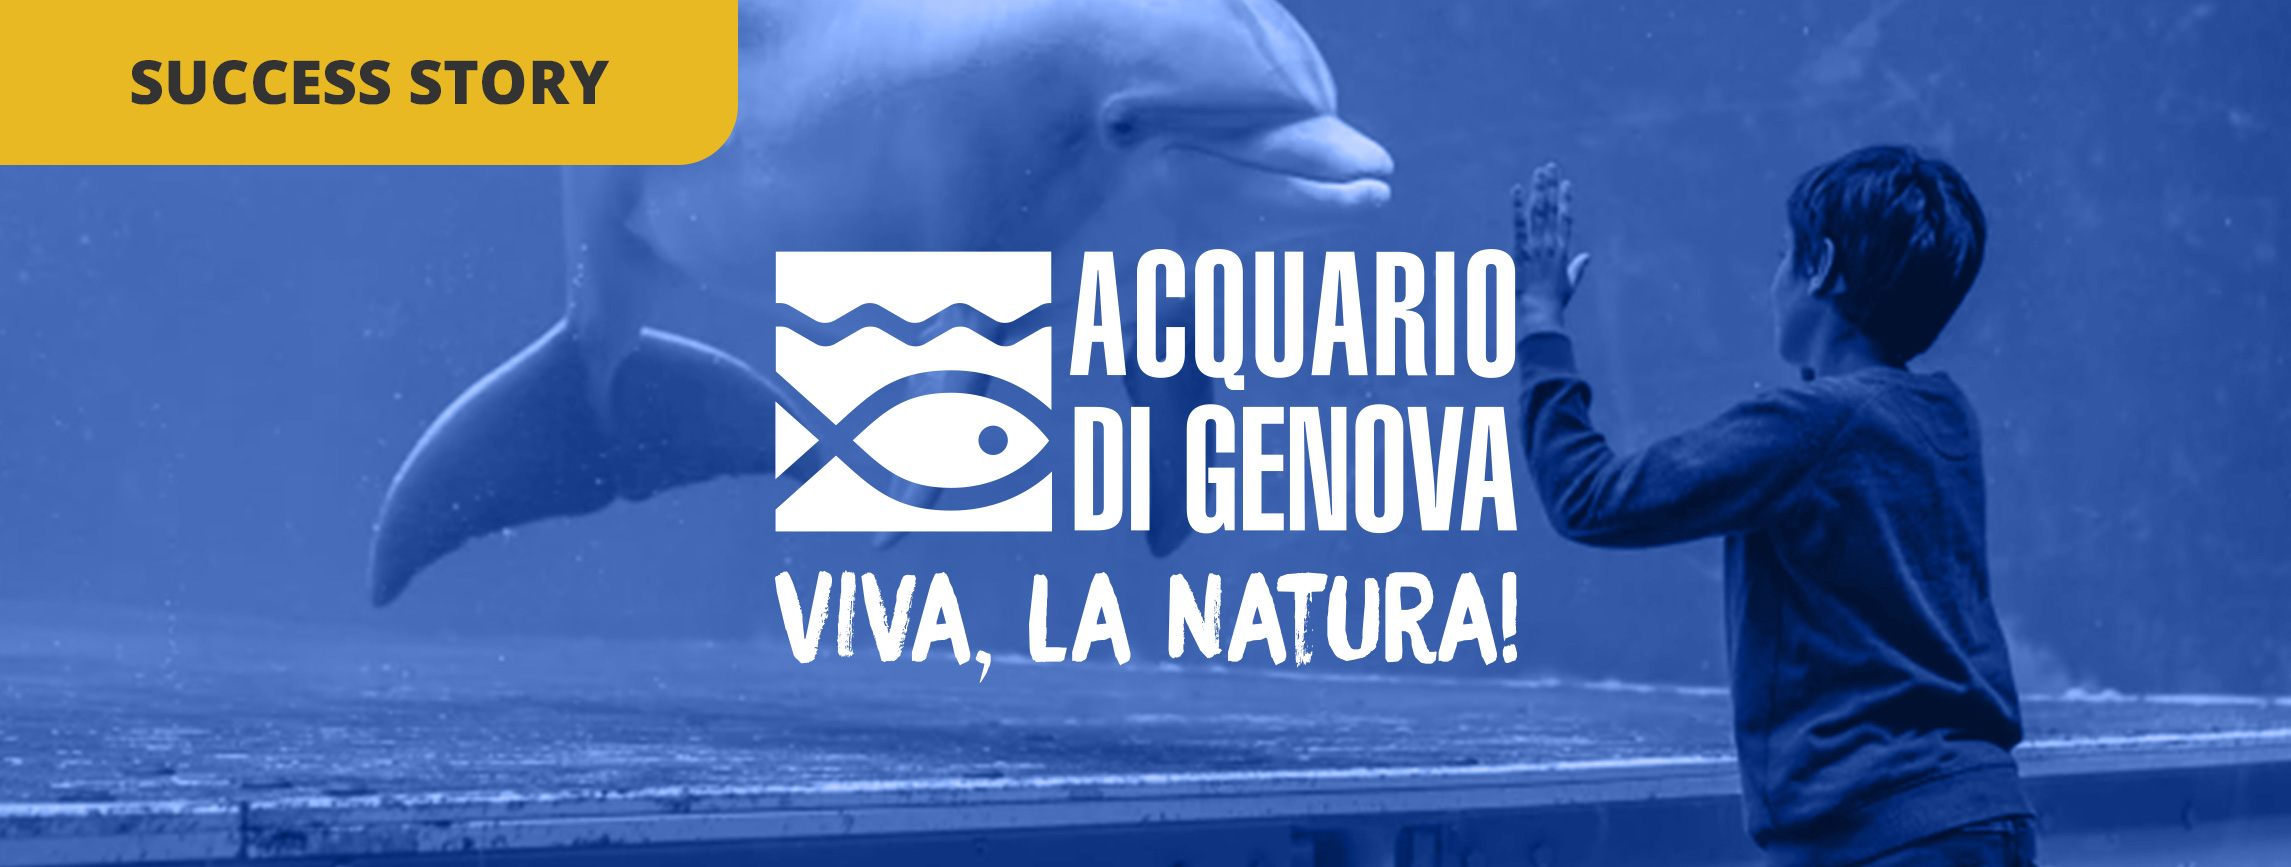 Come l'Acquario di Genova è diventato uno dei 10 migliori acquari del mondo su TripAdvisor